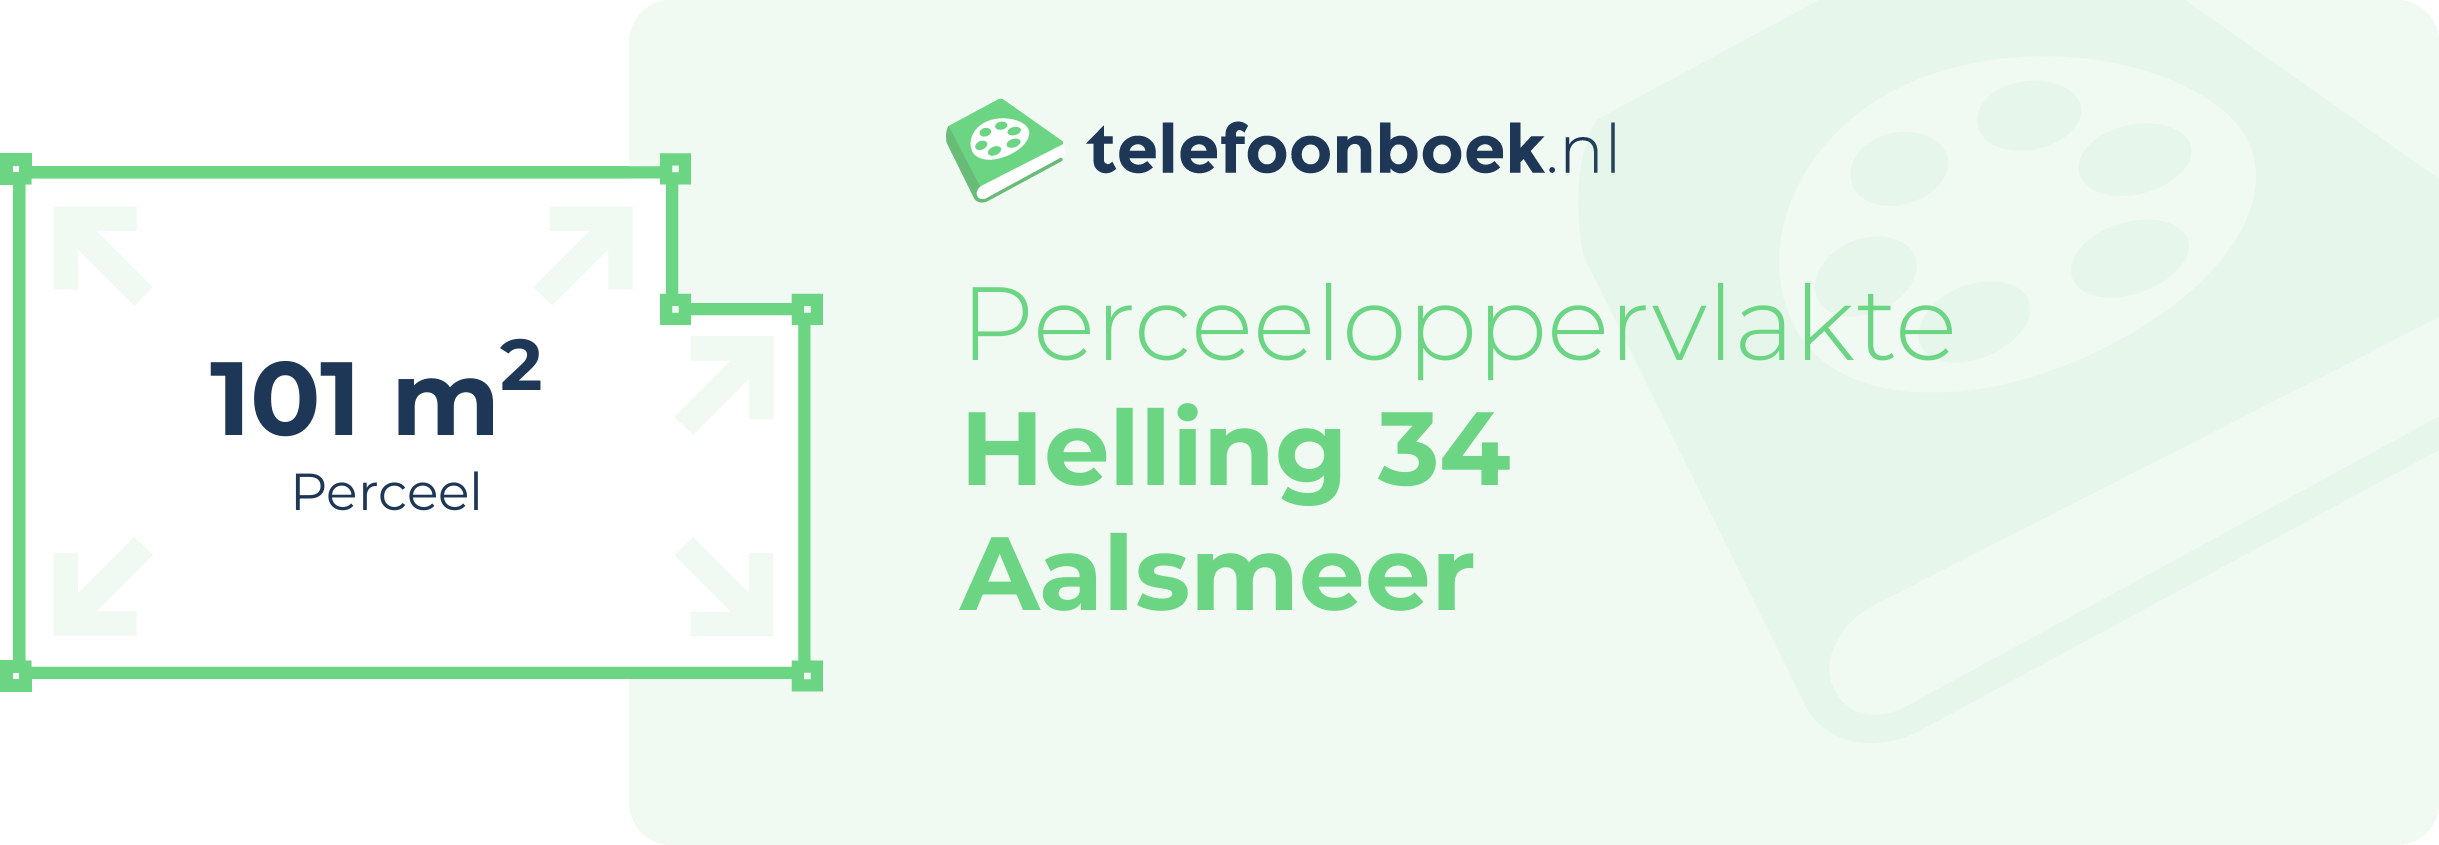 Perceeloppervlakte Helling 34 Aalsmeer